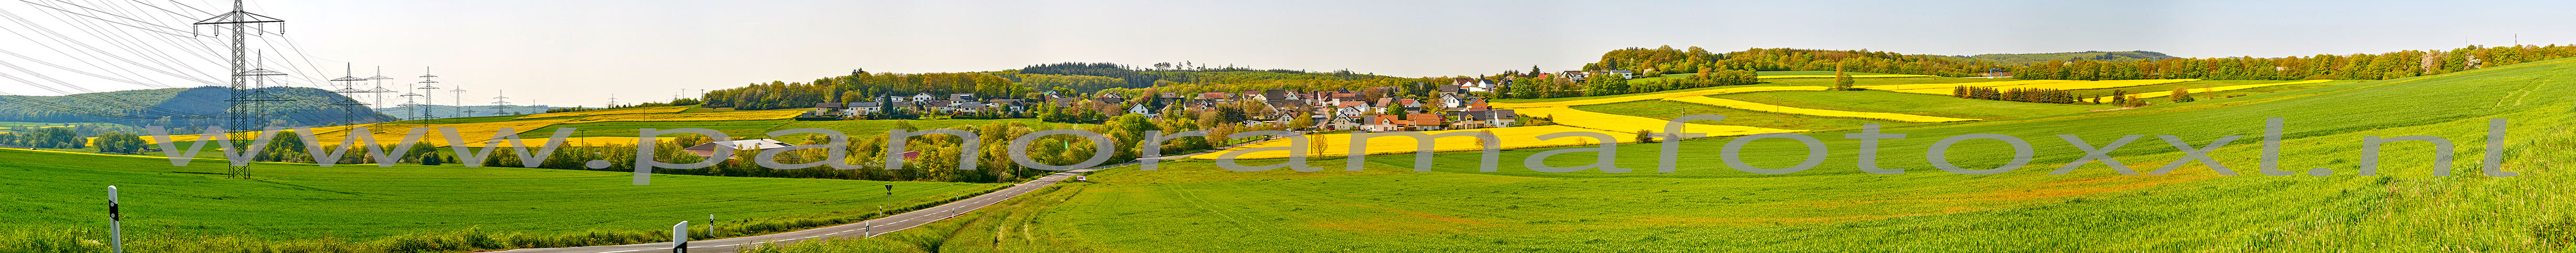 Koolzaadvelden in omgeving Pfalzfeld gefotografeerd